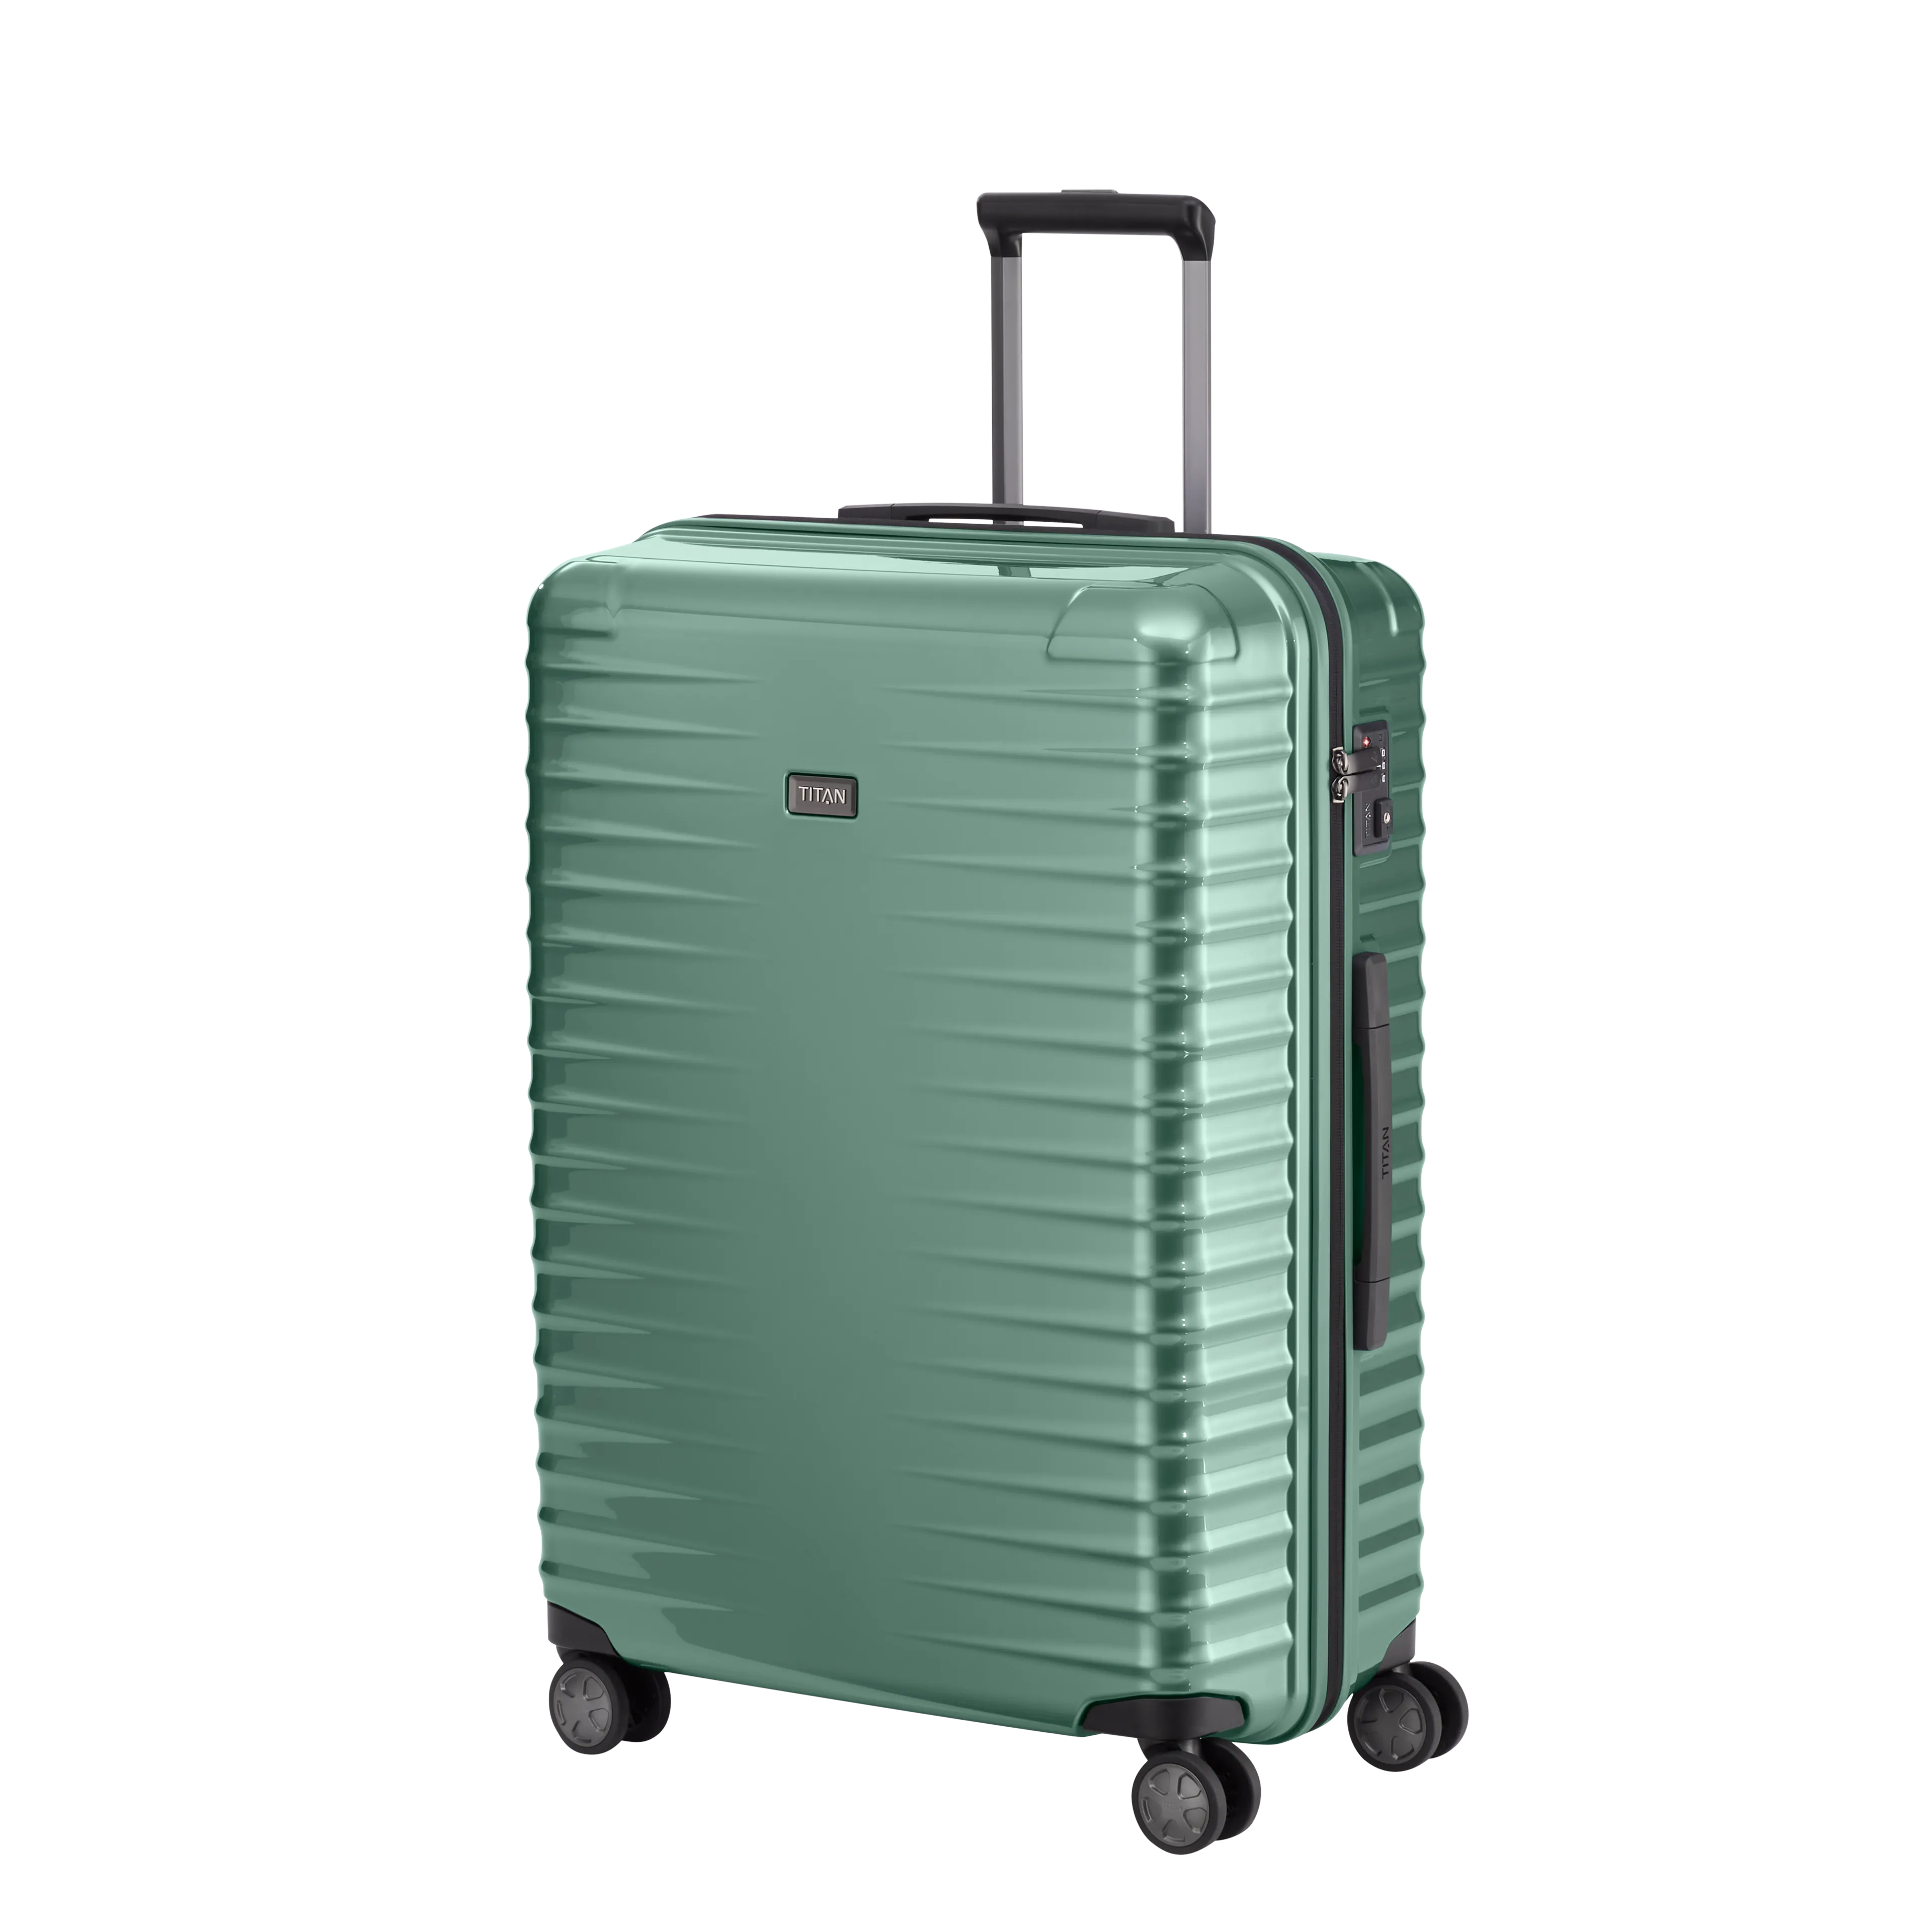 Ein TITAN Koffer der Serie LITRON Schrägansicht in traubengrün Größe L 75cm